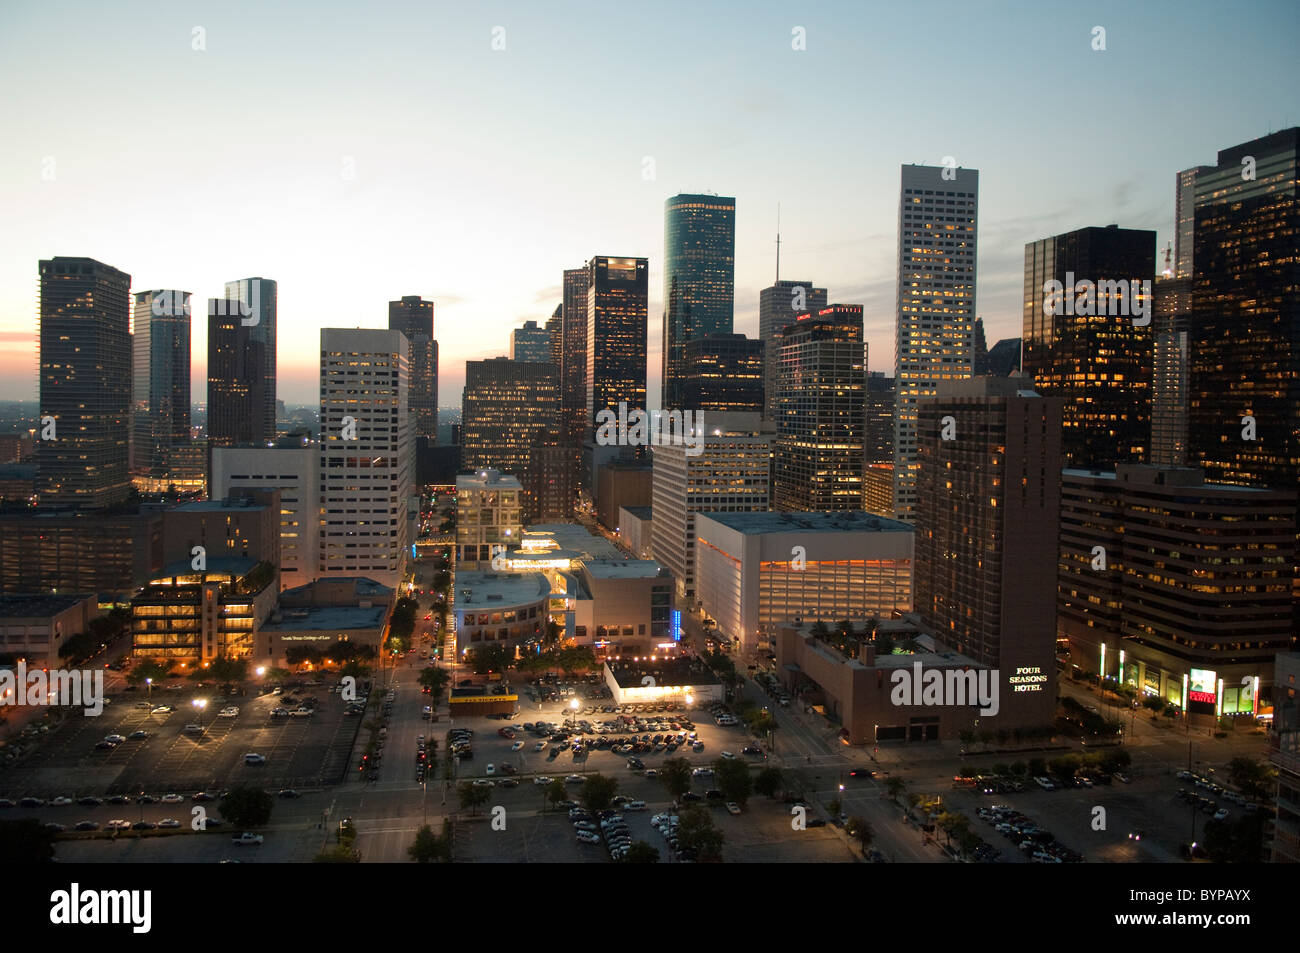 Skyline du centre-ville de Houston, Texas, USA Banque D'Images